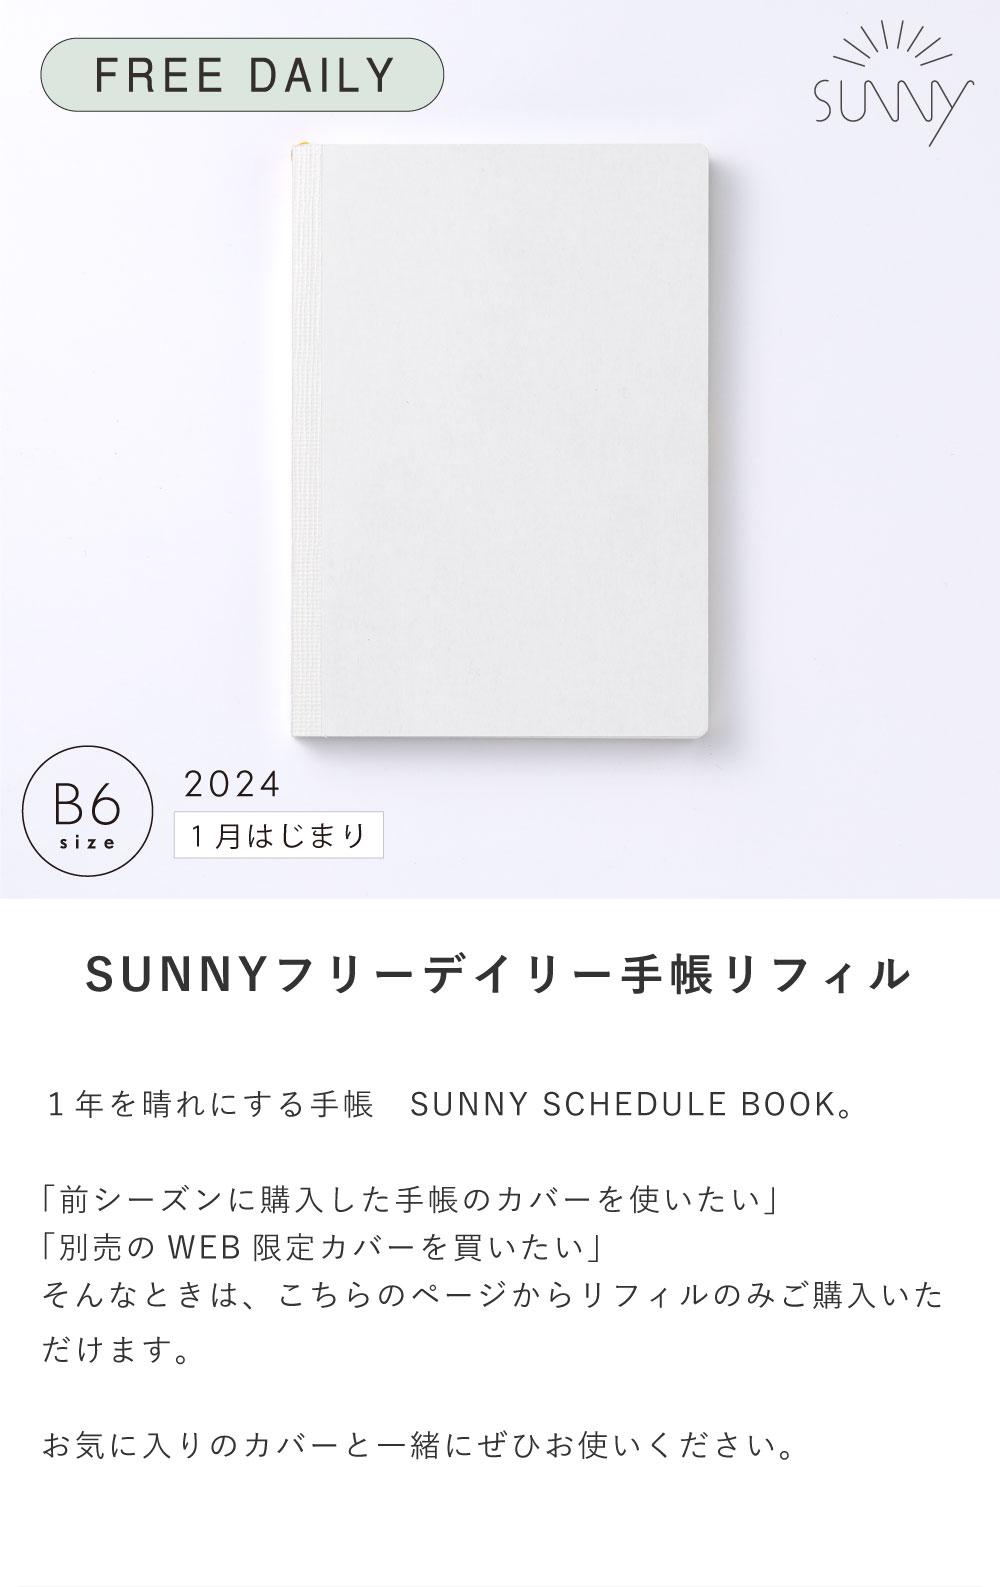 【1冊までメール便可】SUNNY SCHEDULE BOOK フリーデイリー手帳リフィル《2024年/1月始/B6サイズ》